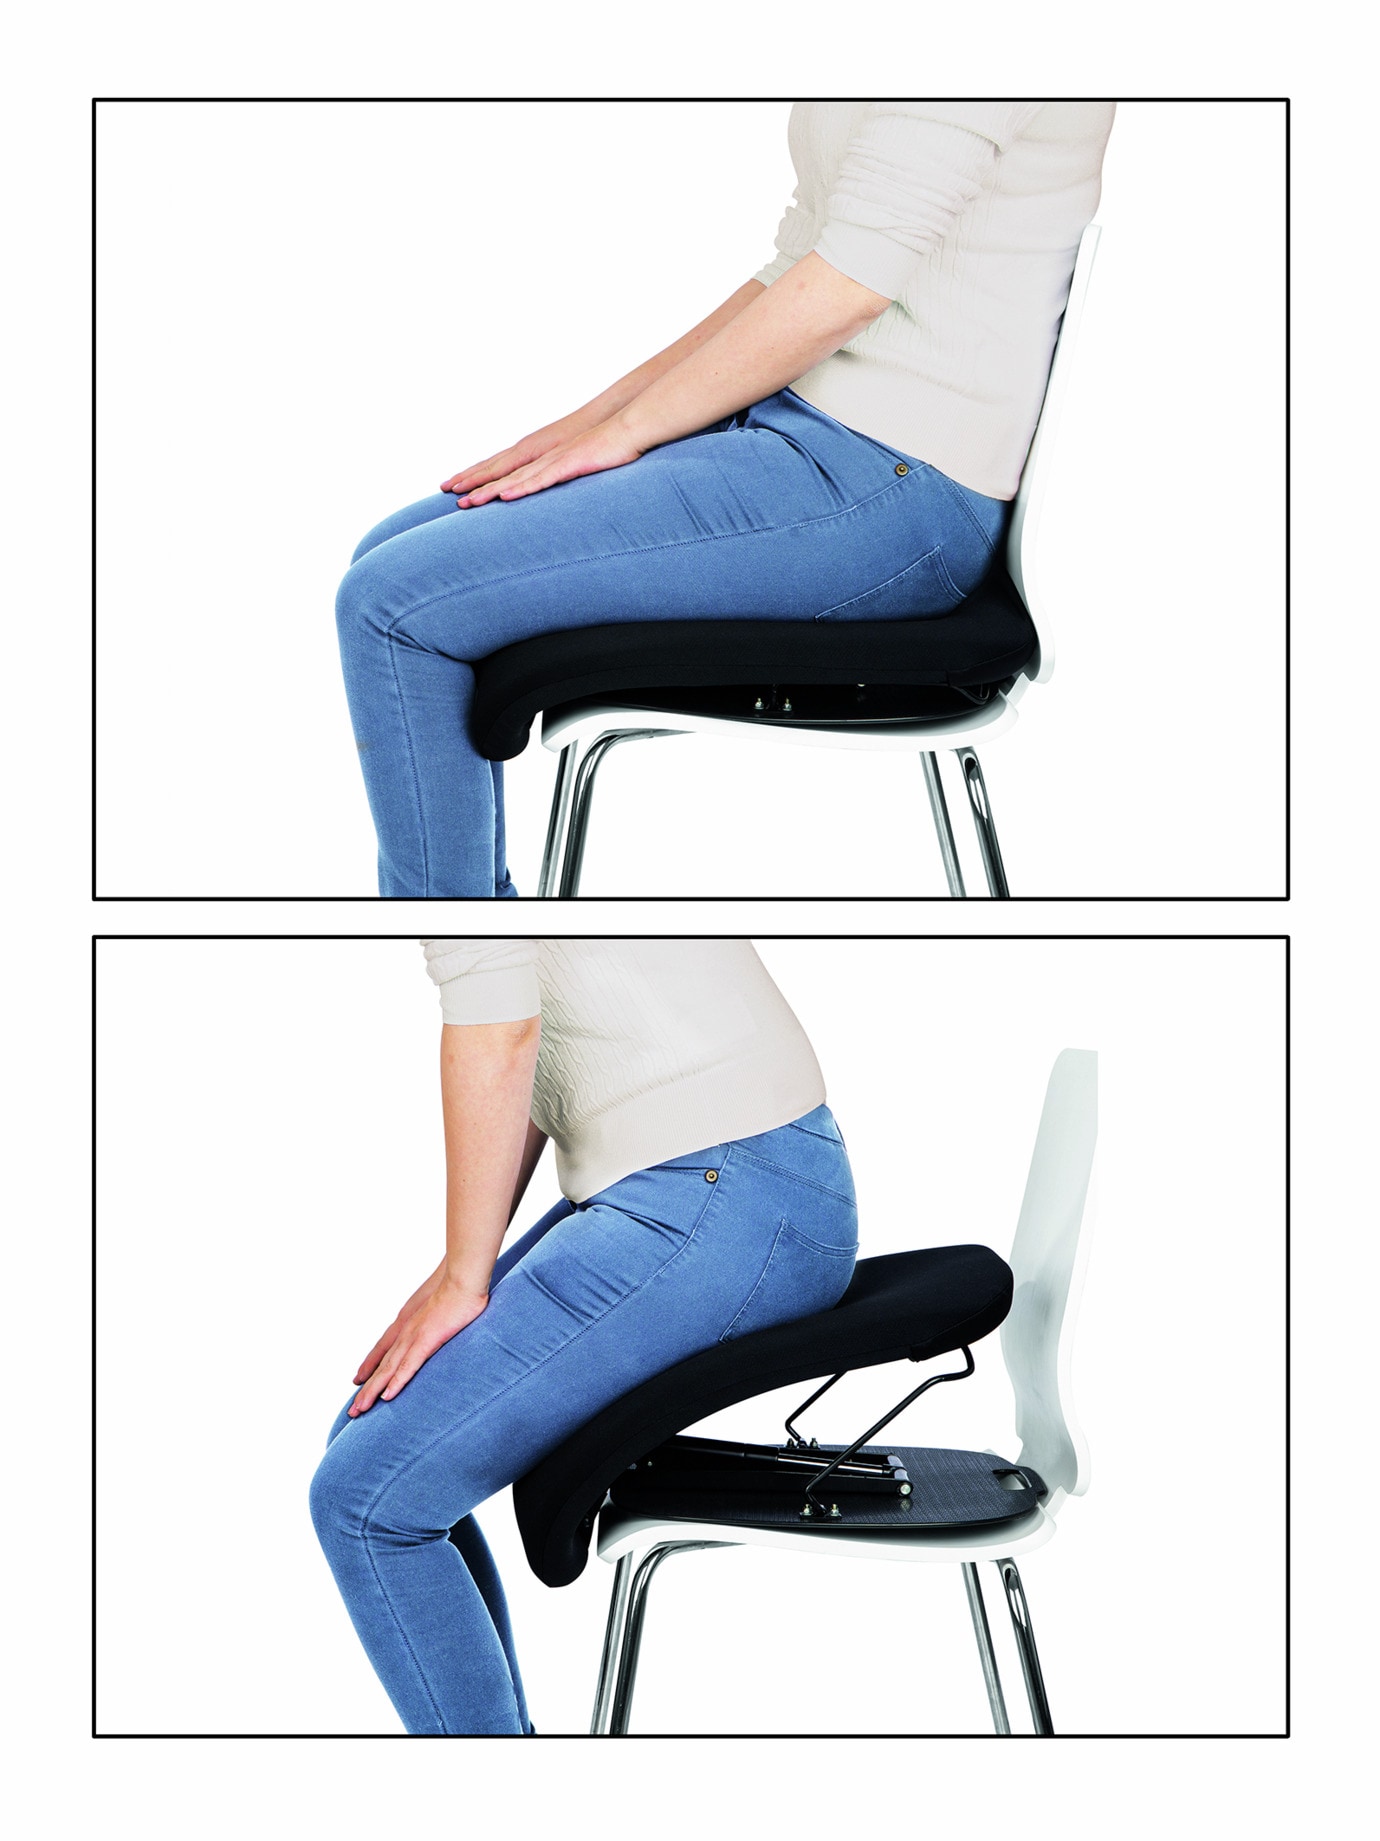 HSI Sitzkissen Aufstehhilfe Sitzauflage Aufstehhilfe Einstellbar bis 105 kg